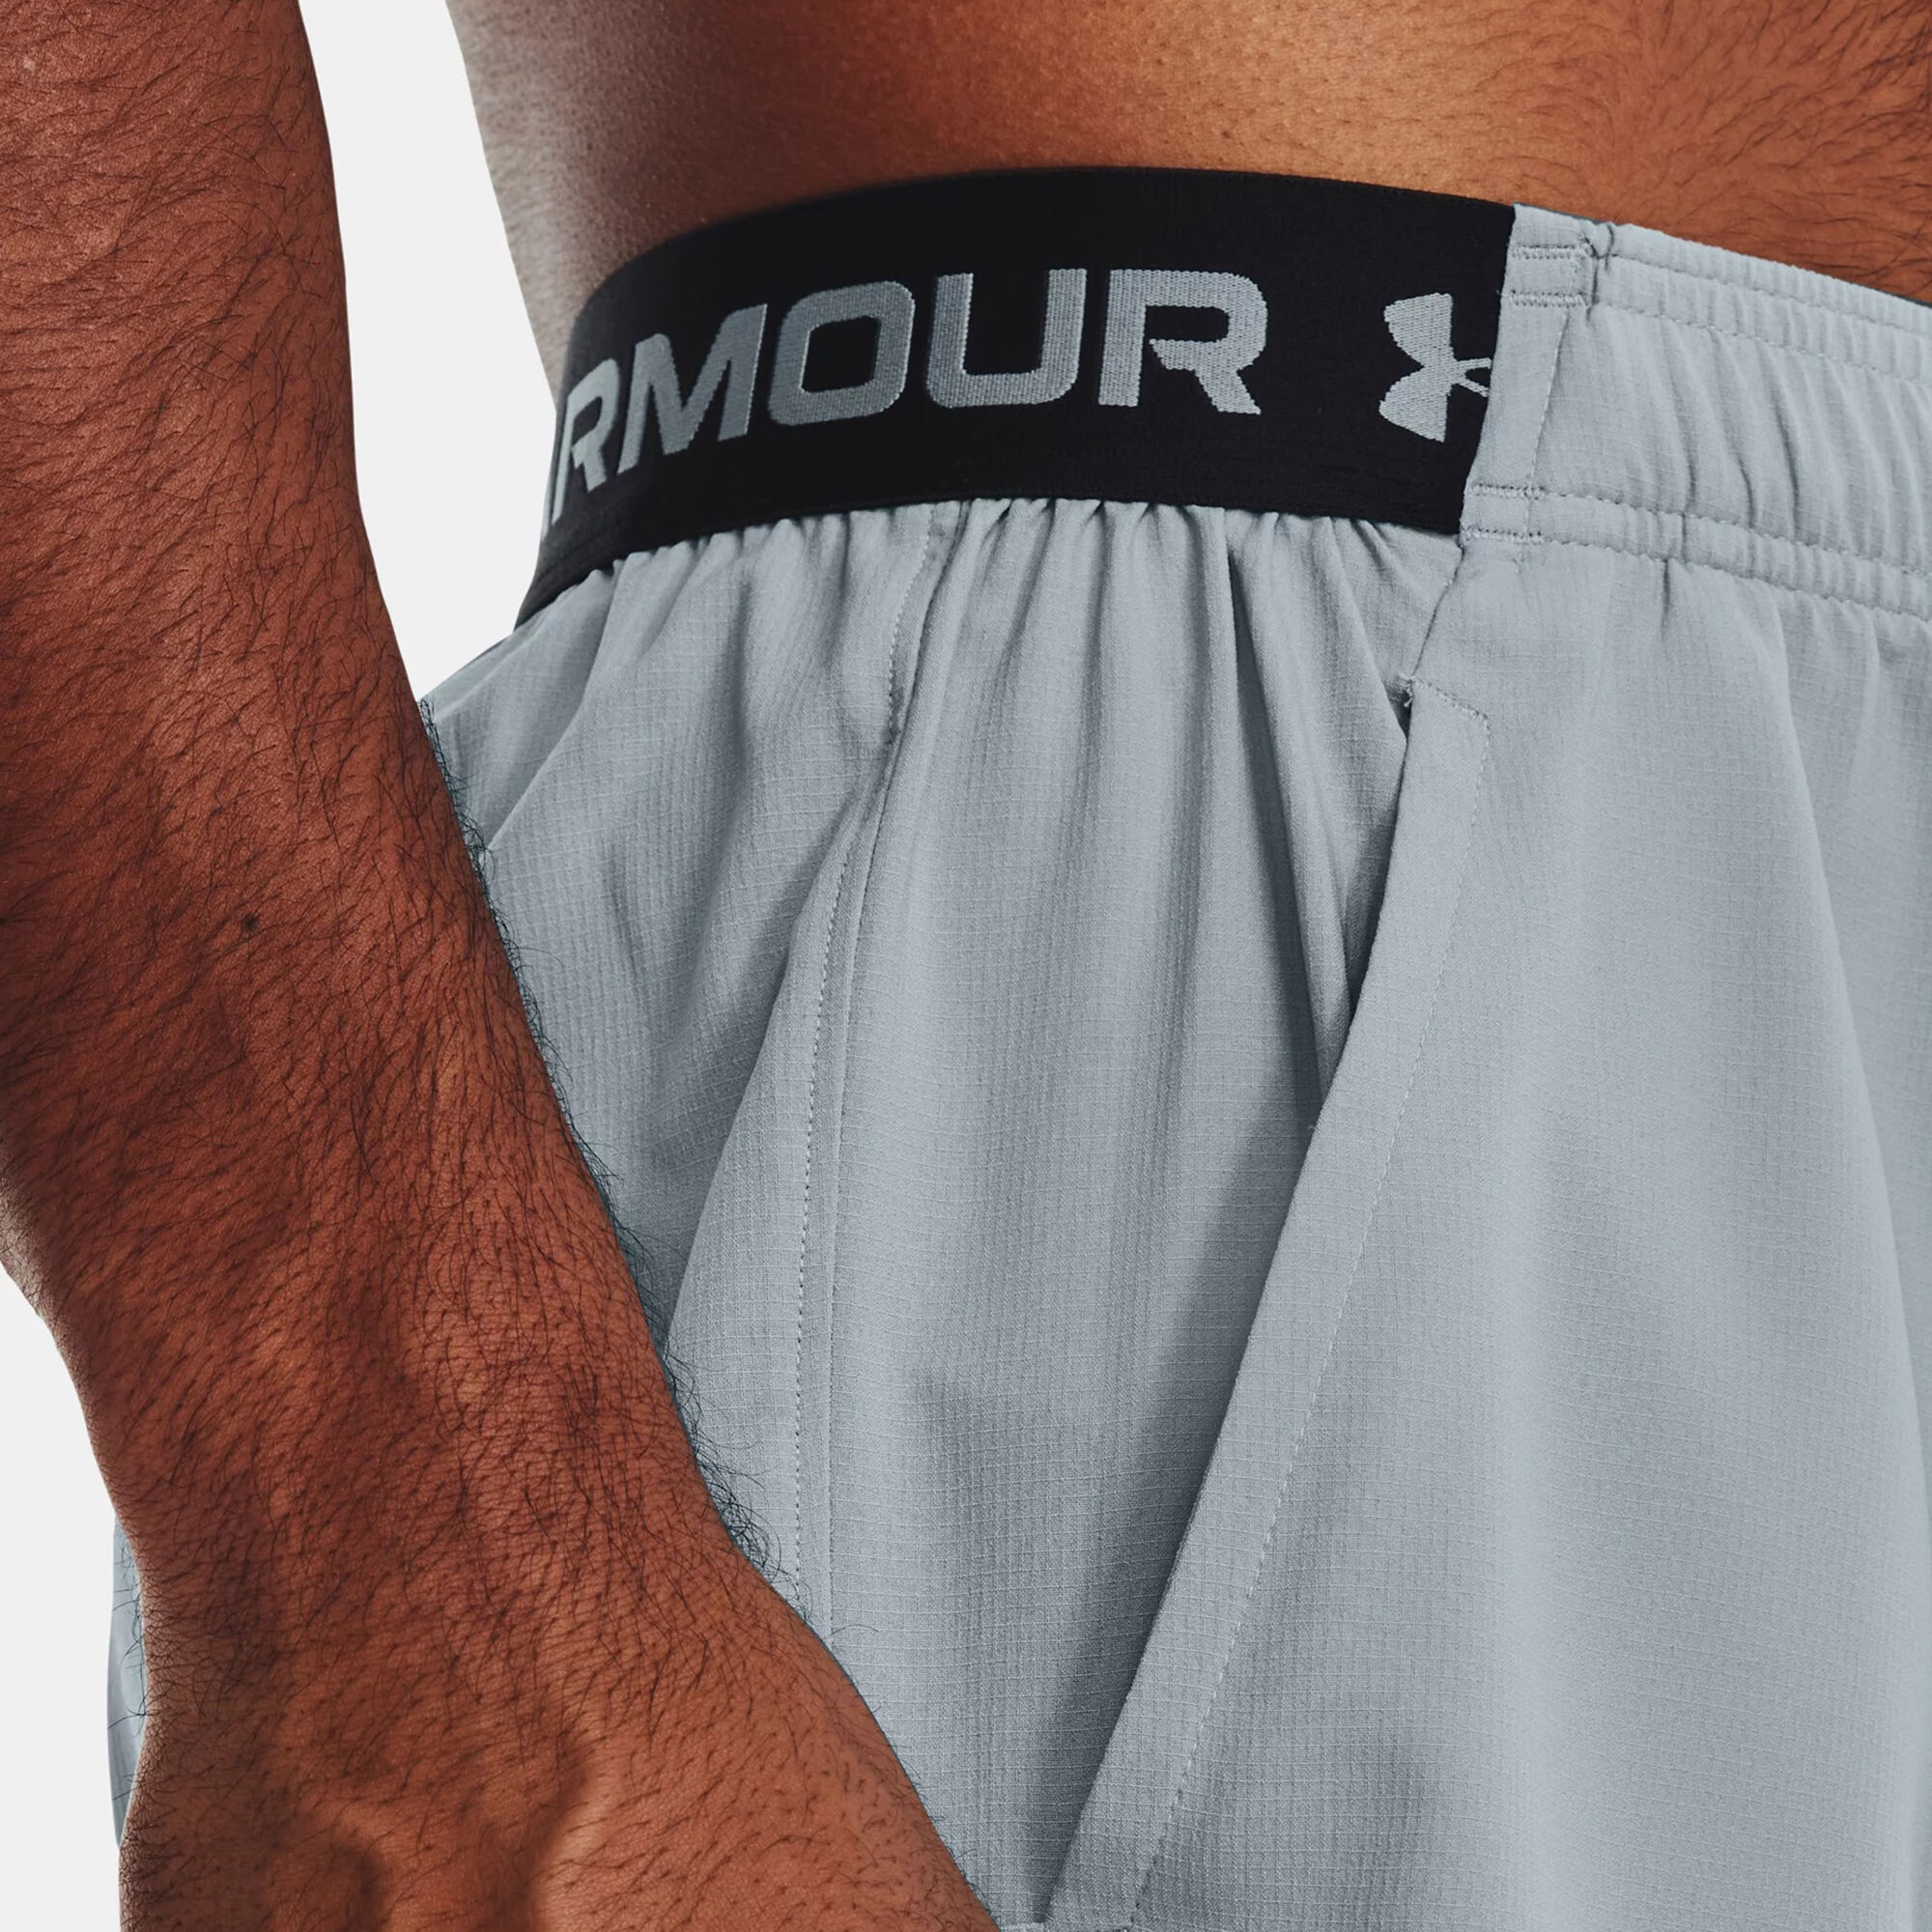 Buy Under Armour Vanish Woven 8in Shorts Men Grey online